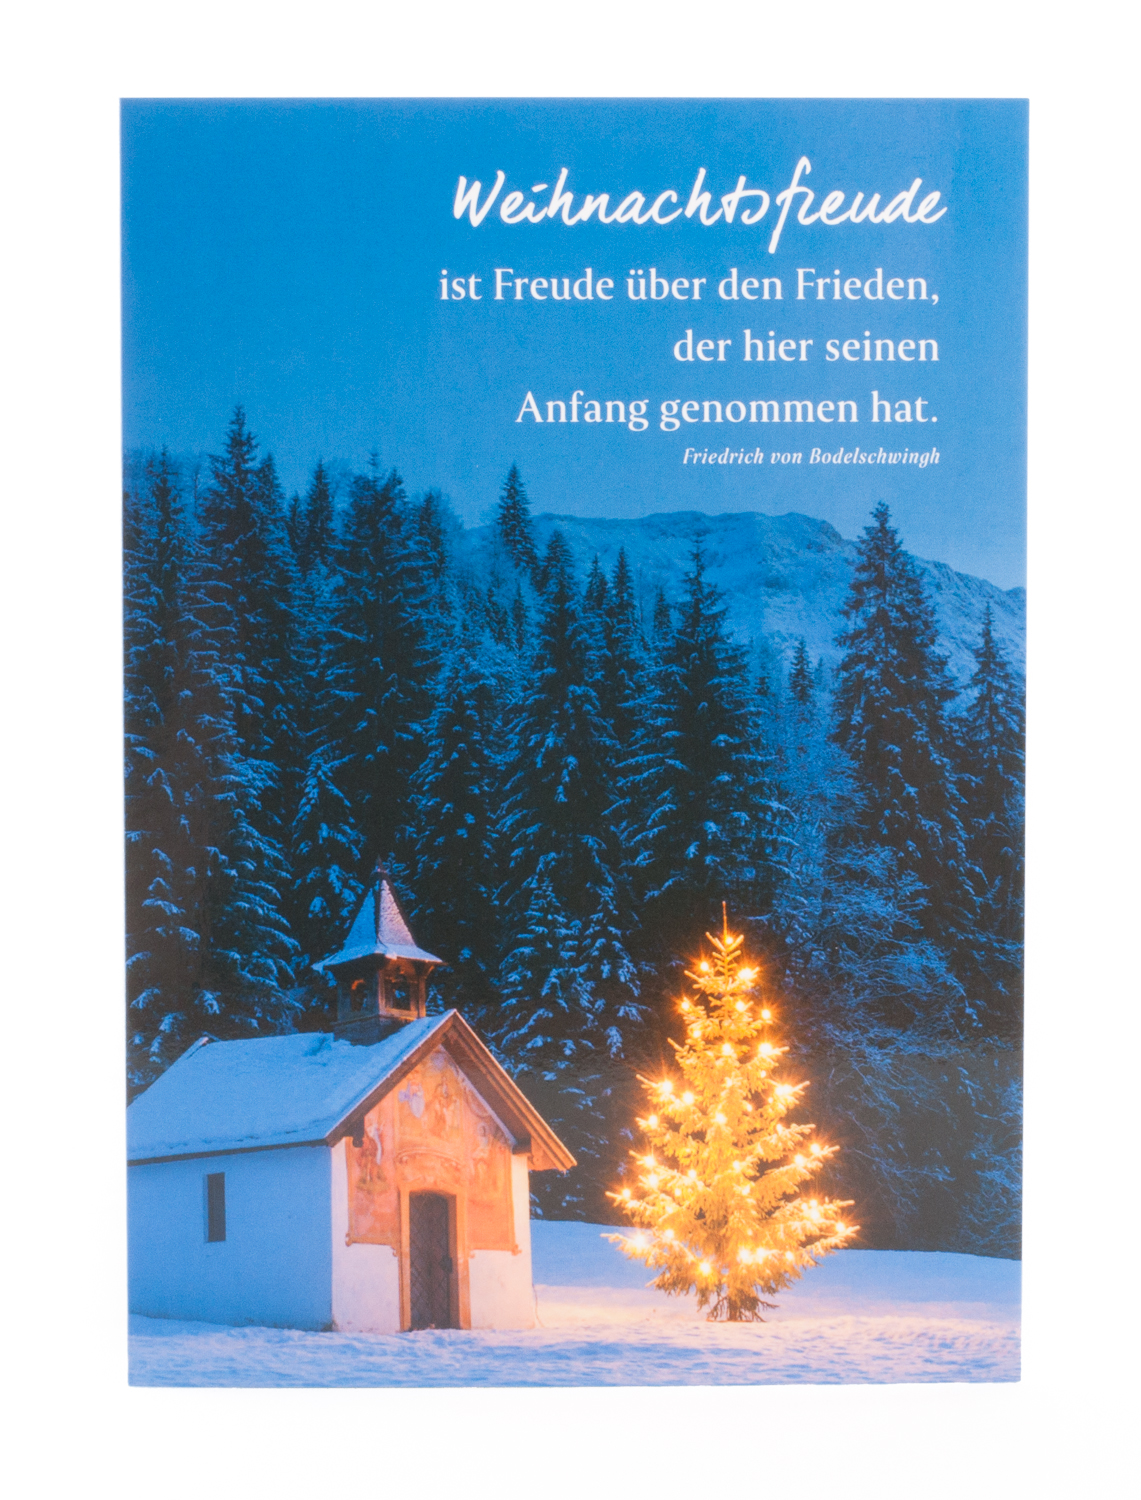 Weihnachtskarte - Weihnachtsfreude ist Freude über den Frieden